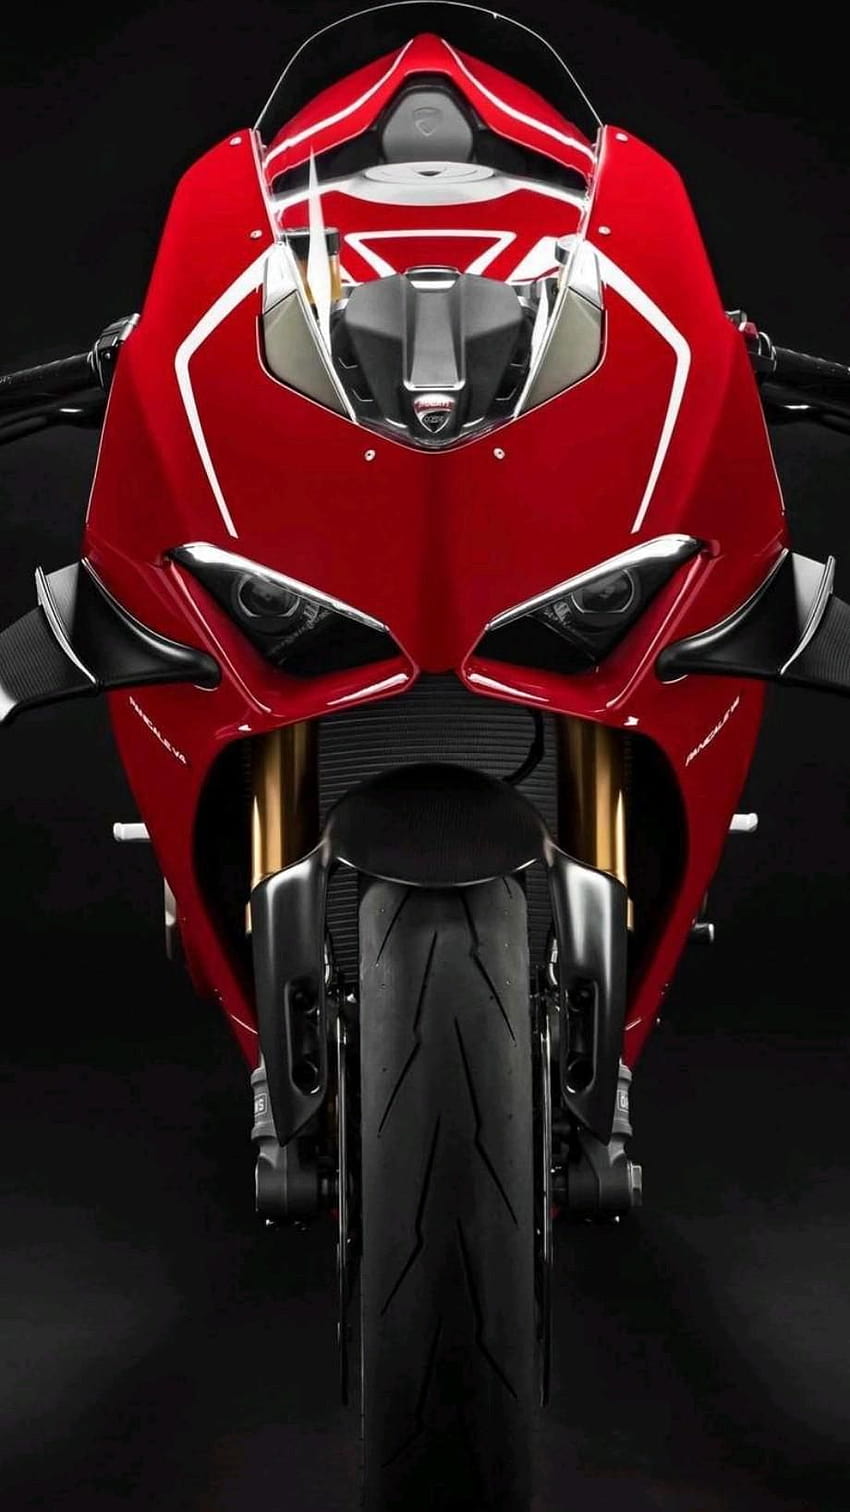 Ducati Monster Ducati Corse super bike sports bike iphone phone HD phone wallpaper